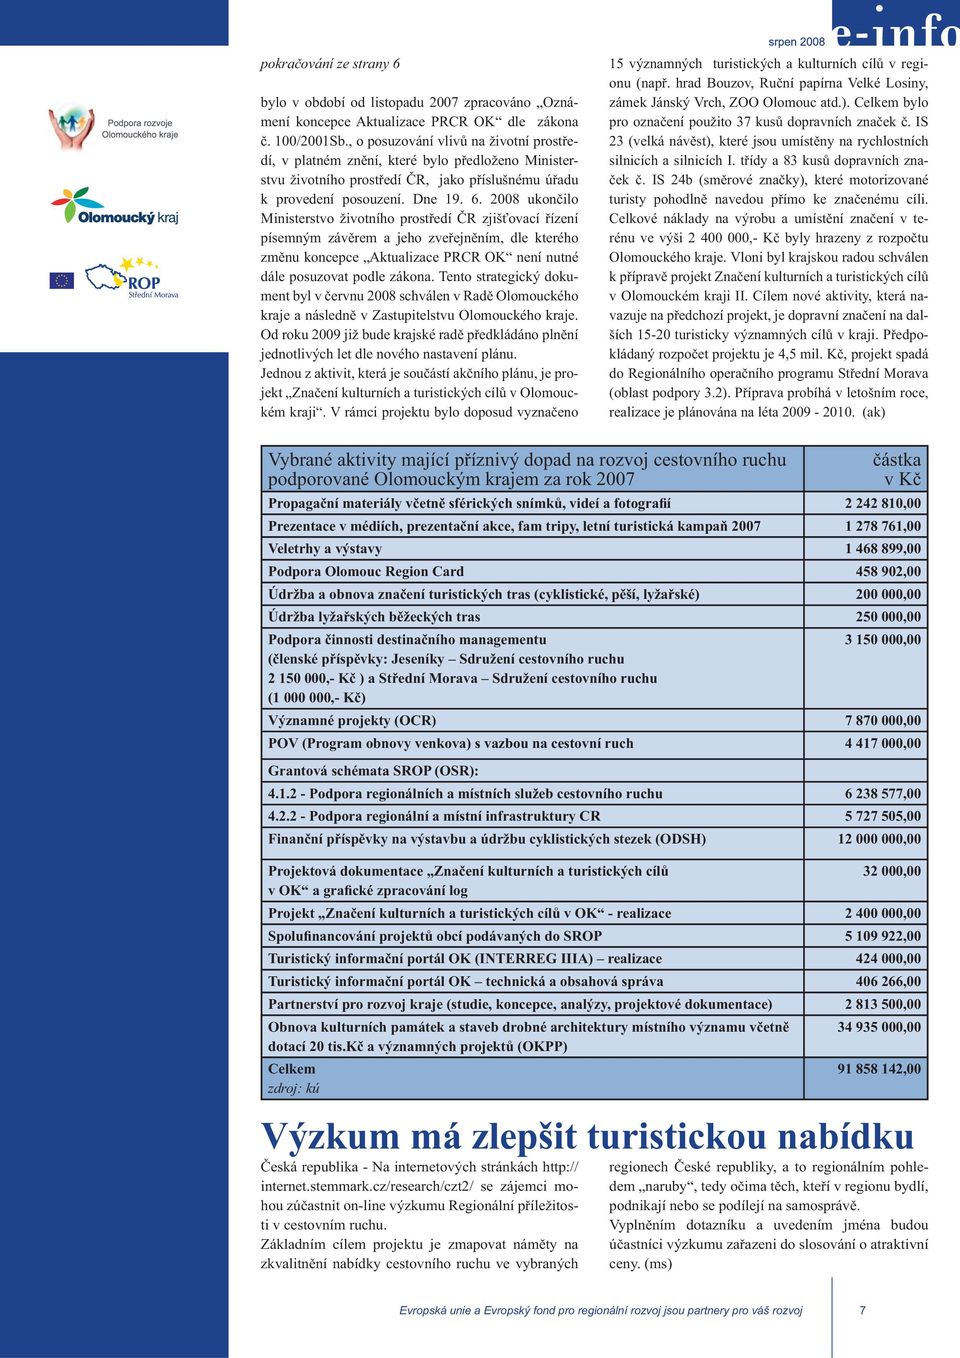 2008 ukončilo Ministerstvo životního prostředí ČR zjišťovací řízení písemným závěrem a jeho zveřejněním, dle kterého změnu koncepce Aktualizace PRCR OK není nutné dále posuzovat podle zákona.